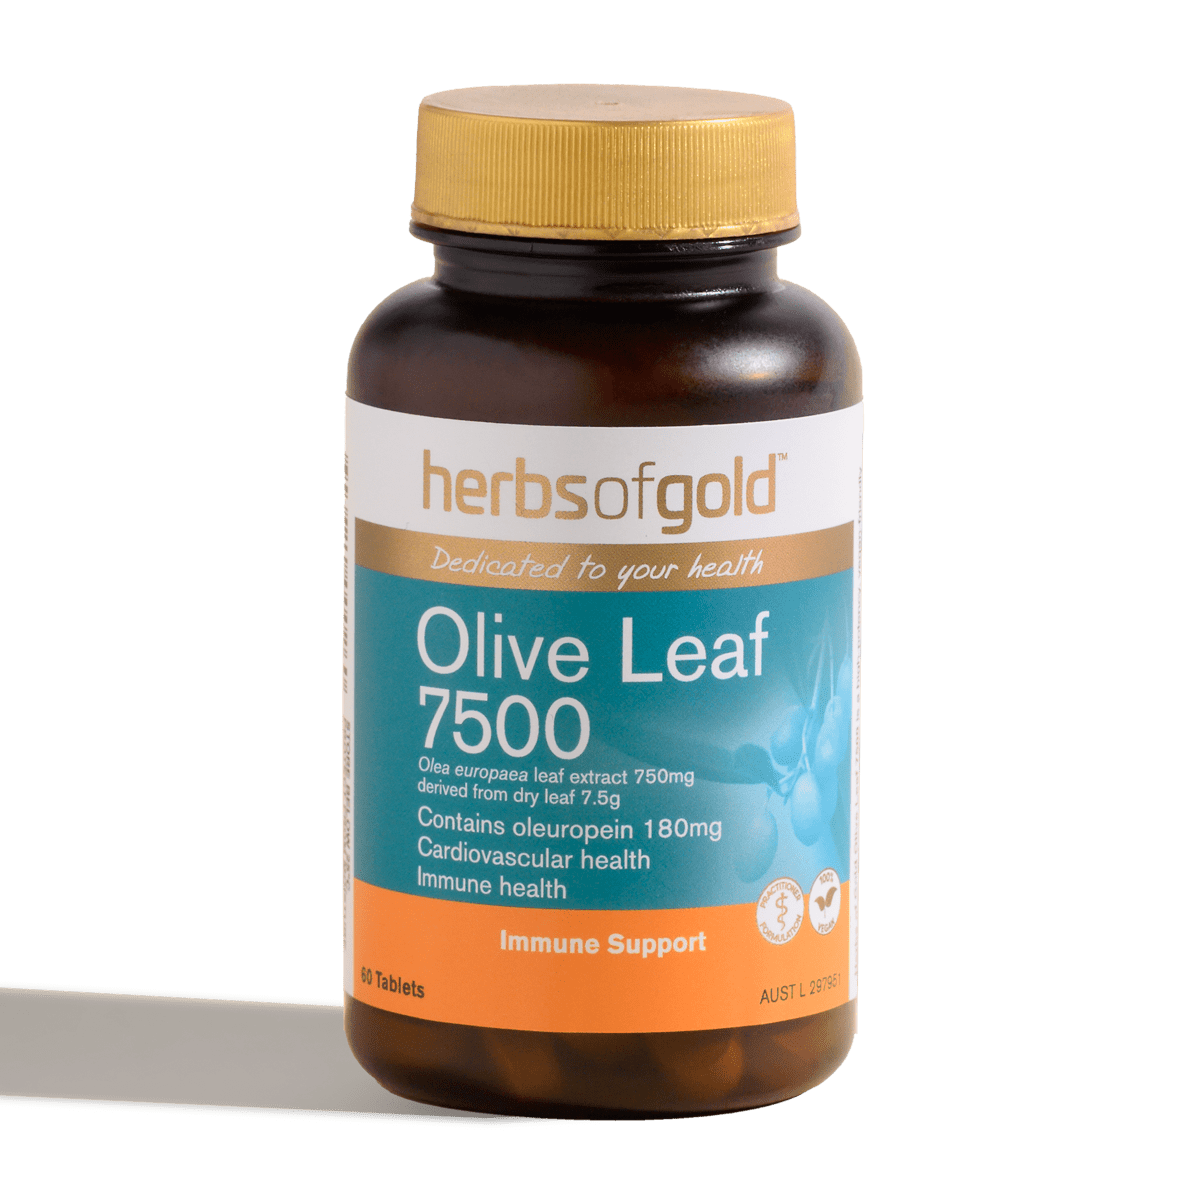 Olive Leaf 7500